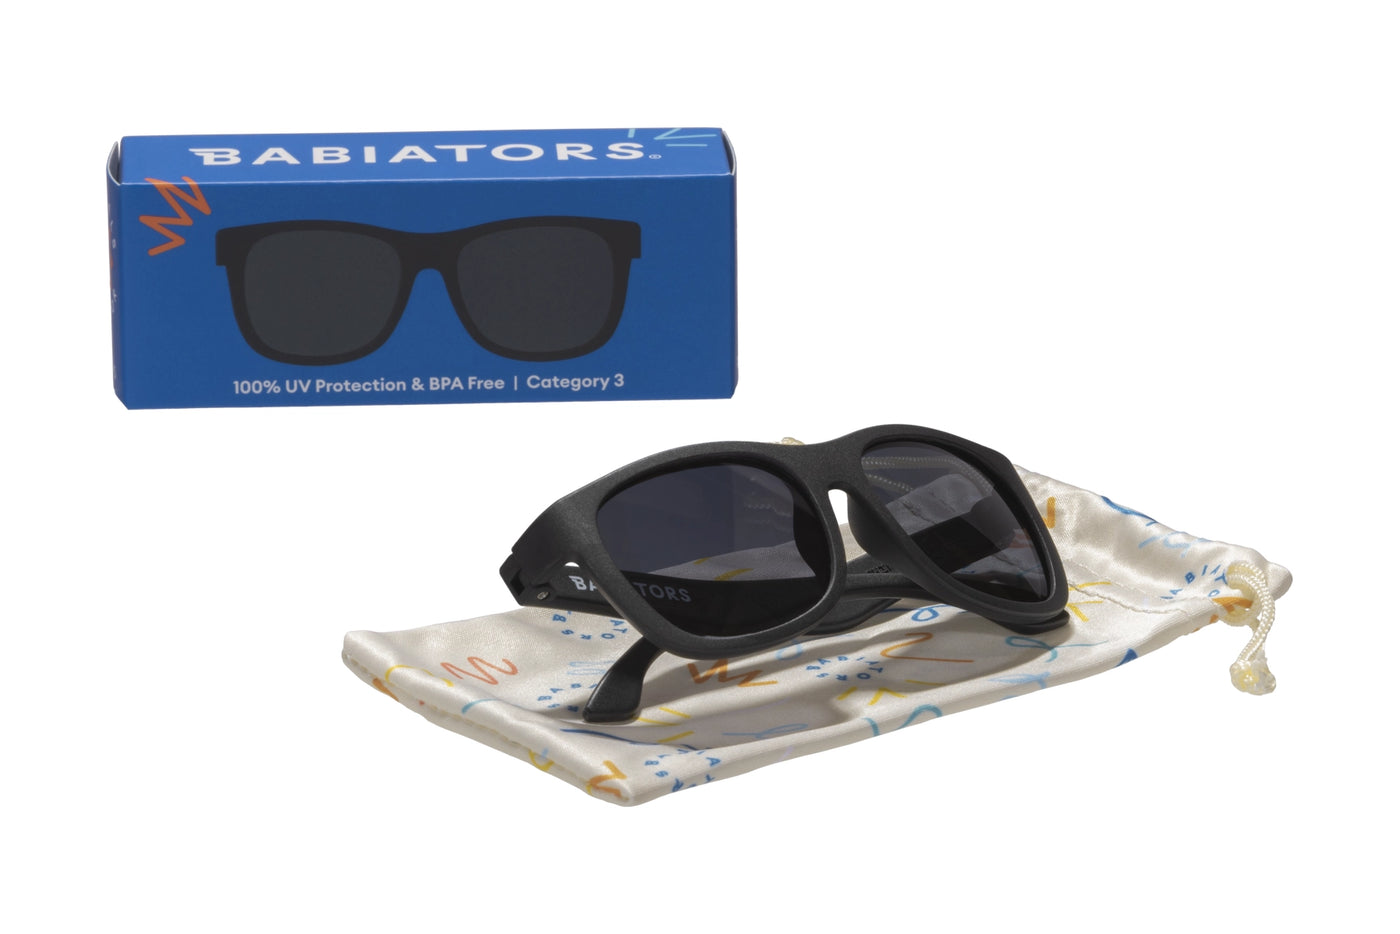 Jet Black Navigator Sunglasses